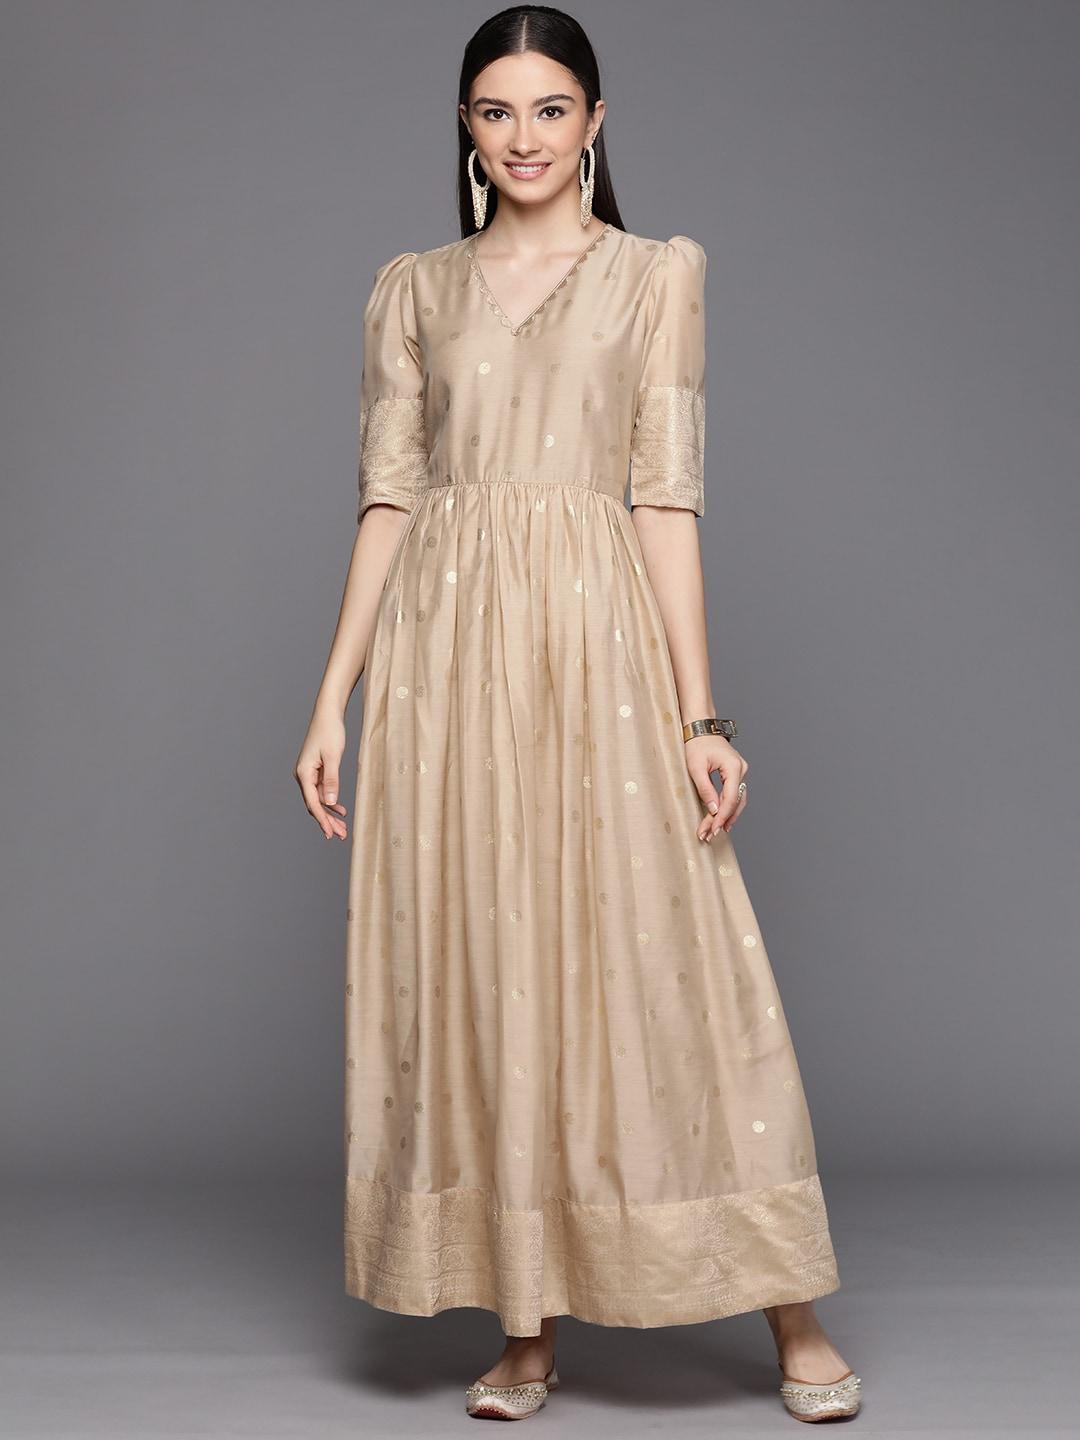 Ahalyaa Women Beige & Golden Polka Dots Print A-line Maxi Dress